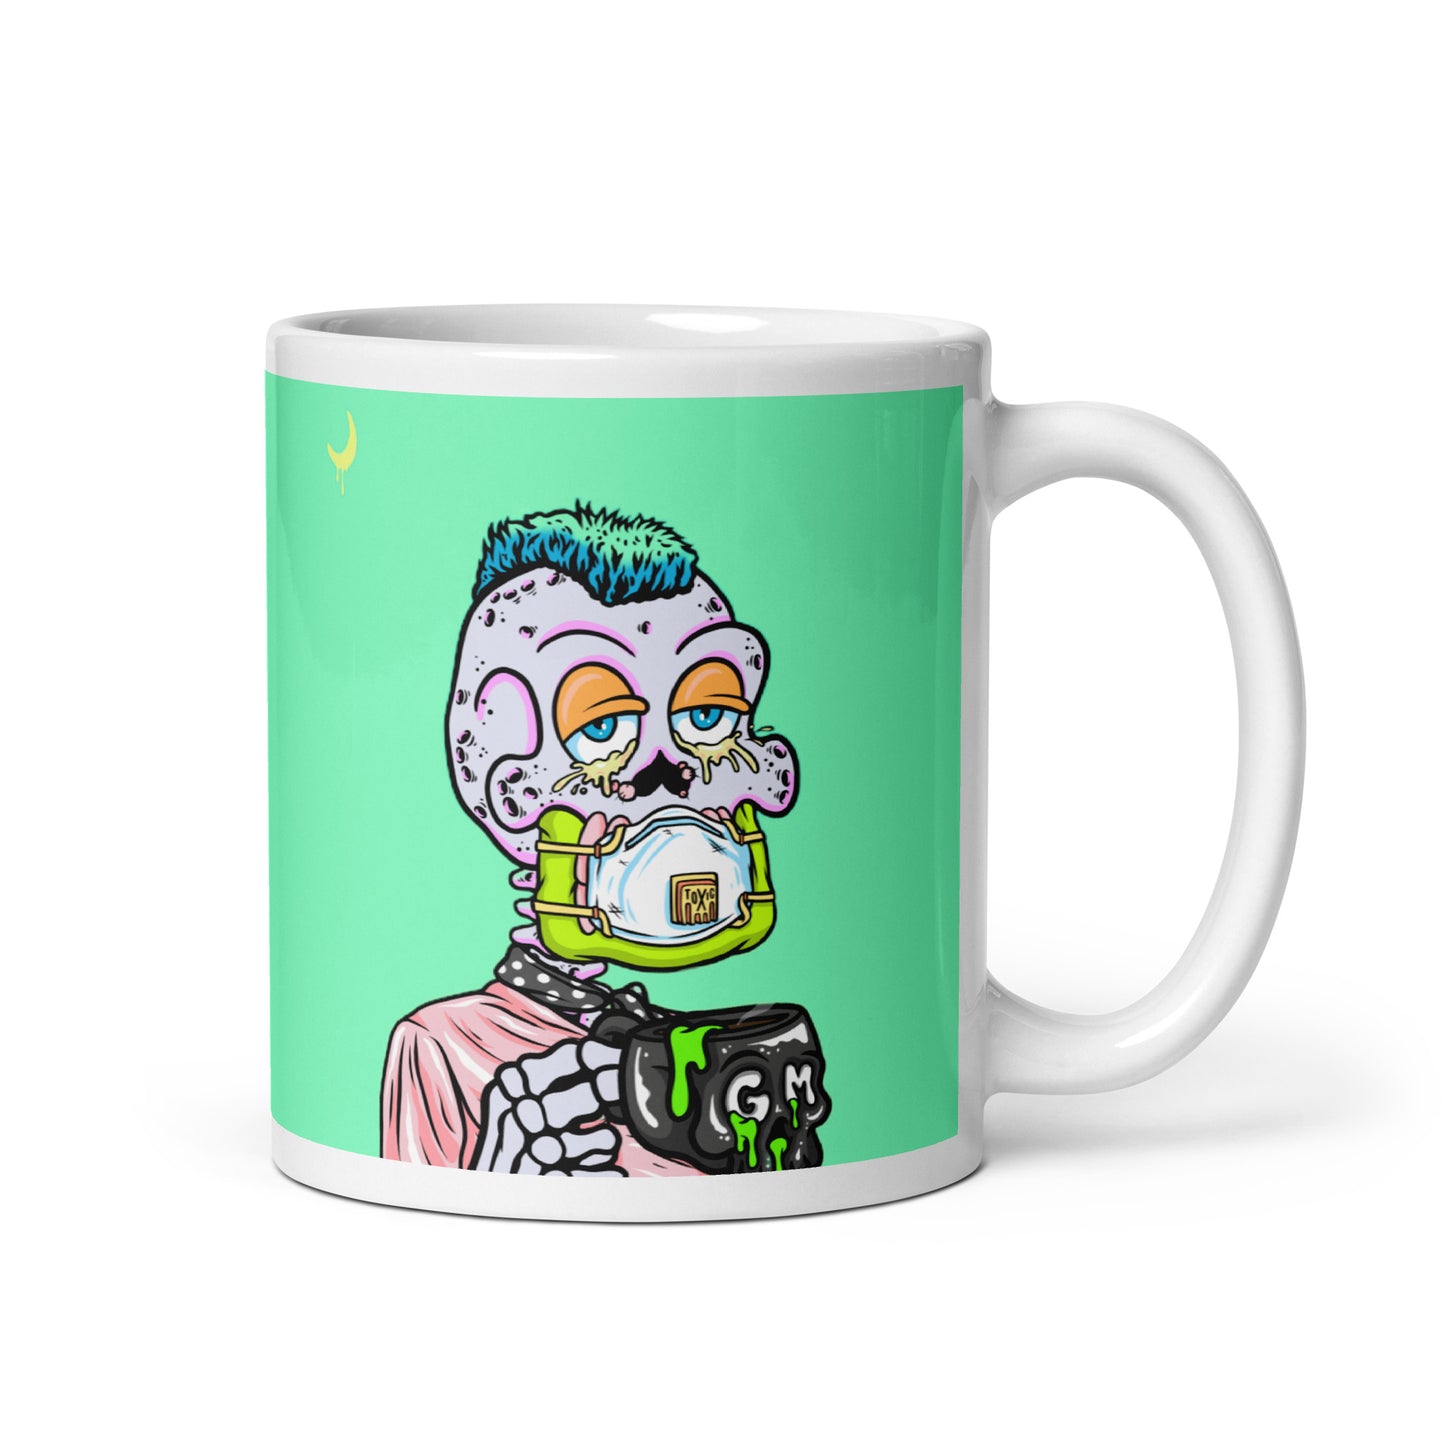 White glossy mug feat Toxic Skulls Club #7803 GM pre-toxic